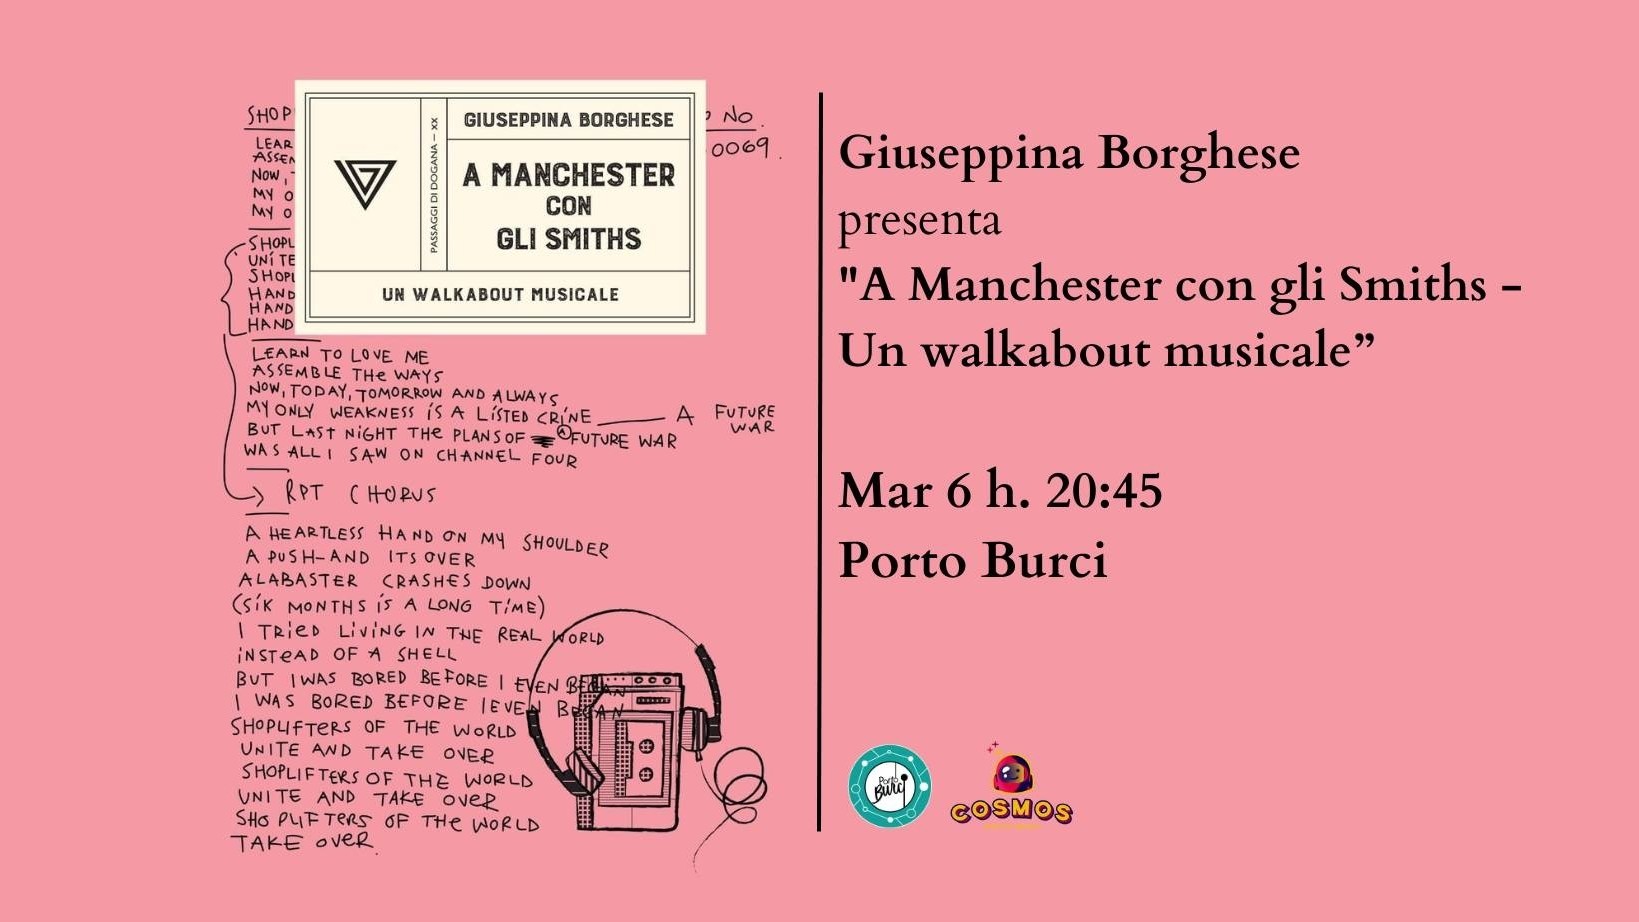 Presentazione "A Manchester con gli Smiths - Un walkabout musicale" con Giuseppina Borghese